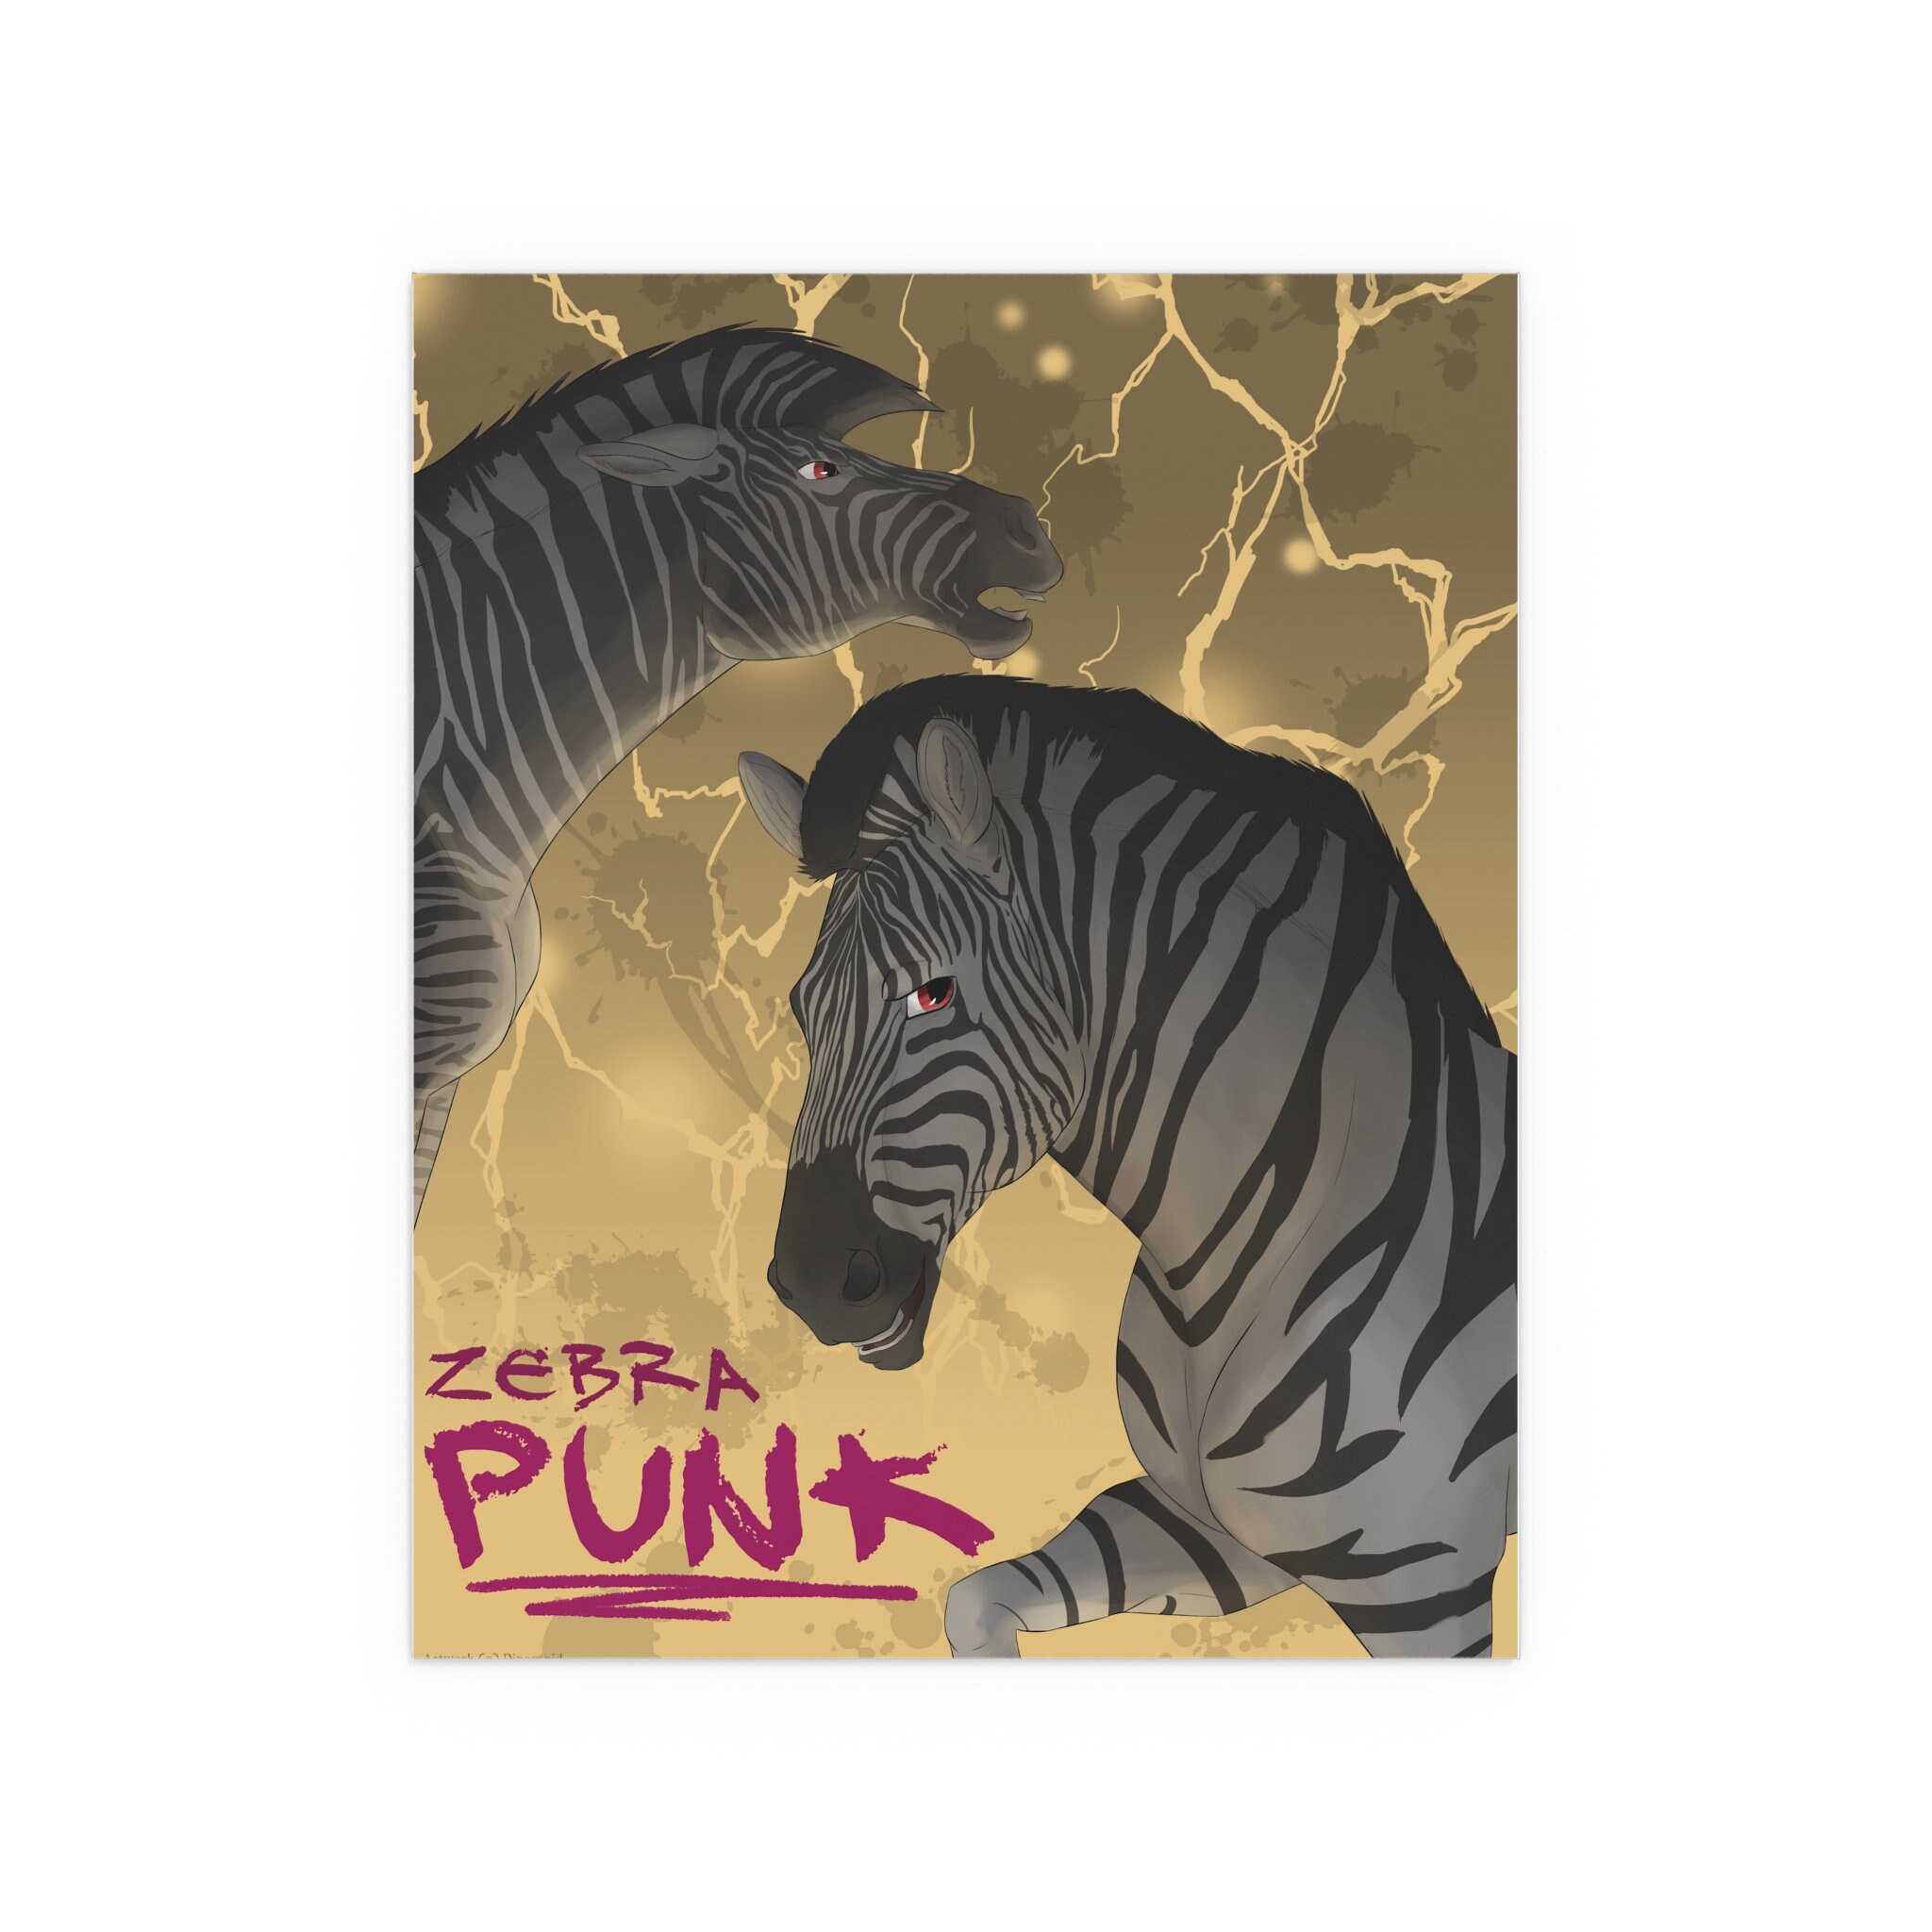 Zebra Punk Poster - Etsy